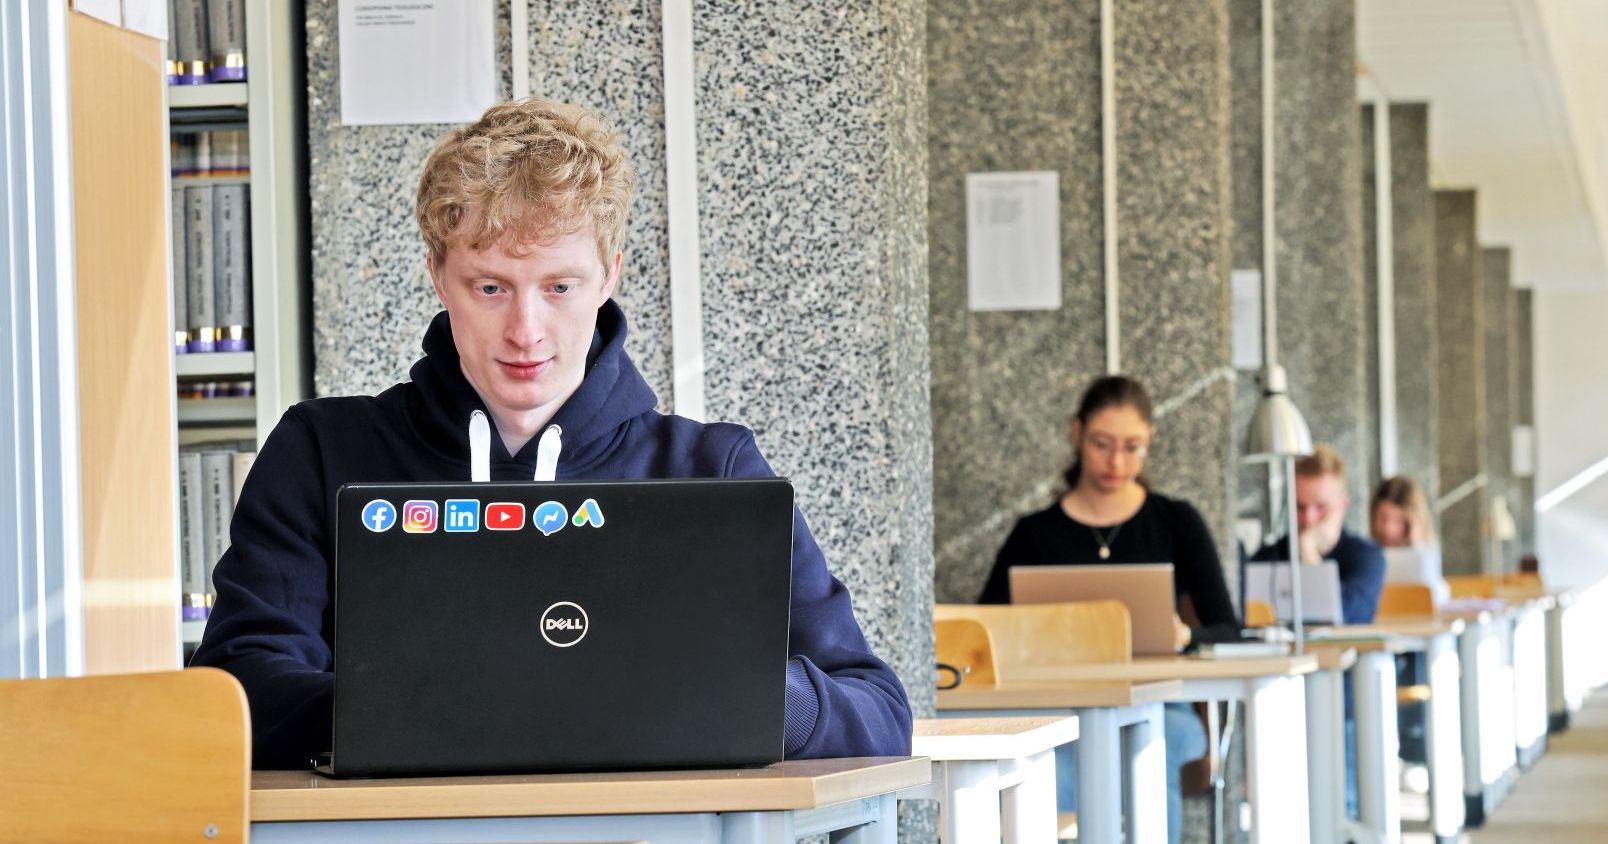 Na podium uczelni pod względem liczby stypendystów oprócz Uniwersytetu Mikołaja Kopernika w Toruniu stanęły Uniwersytet Warszawski (49) i Uniwersytet Jagielloński (37). Studenci i studentki w bibliotece siedzą przy biurkach z laptopami, po lewej stronie widać również fragment regału z książkami